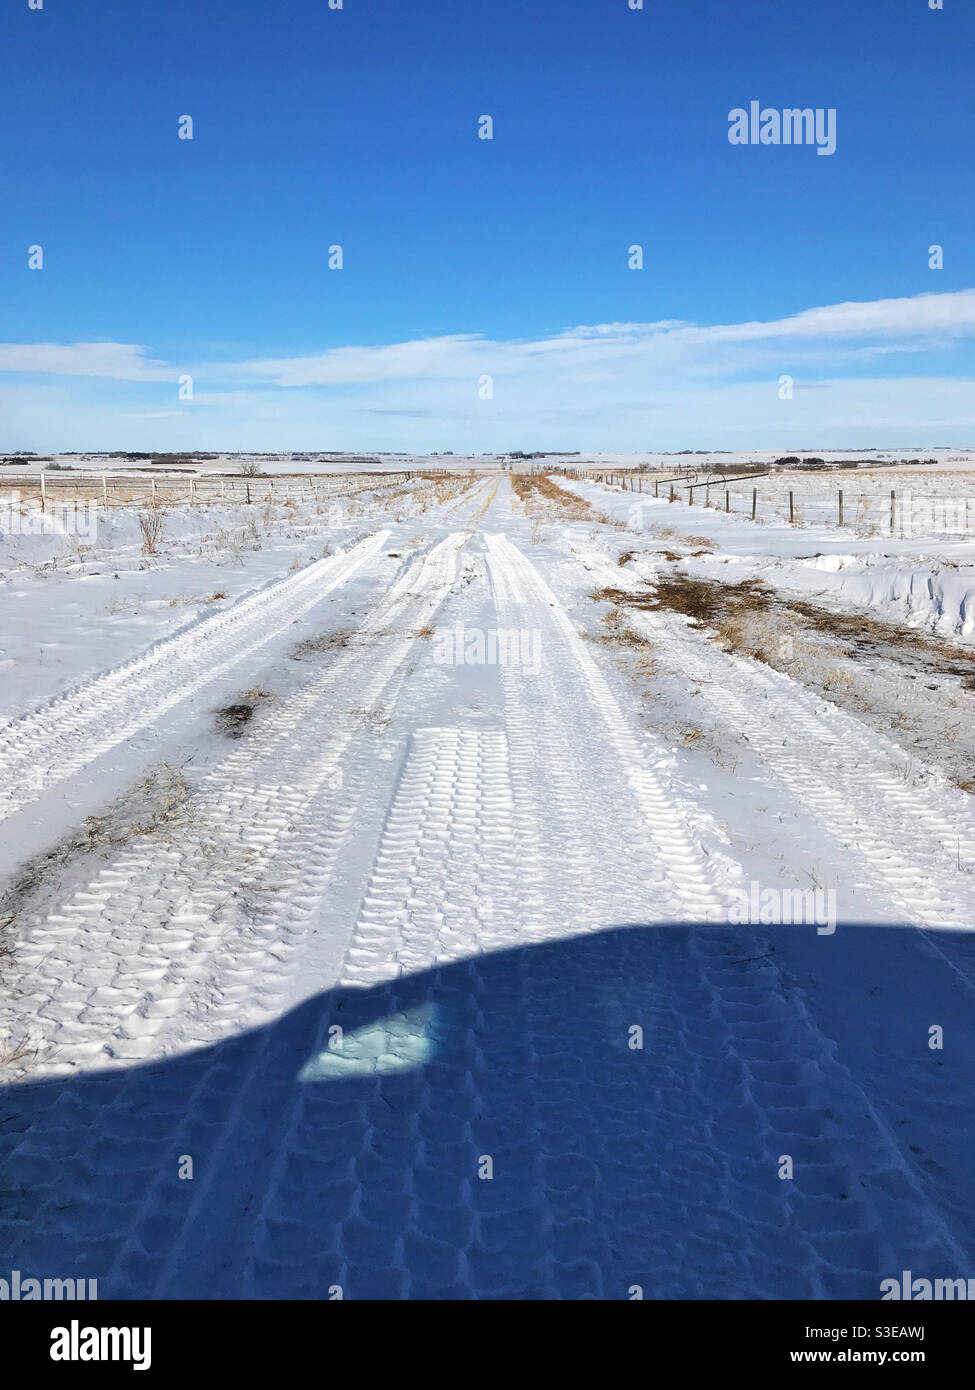 Ombre du véhicule faisant un demi-tour après avoir atteint la neige profonde sur une route de terre de prairie. Près de Calgary, Alberta, Canada. Banque D'Images